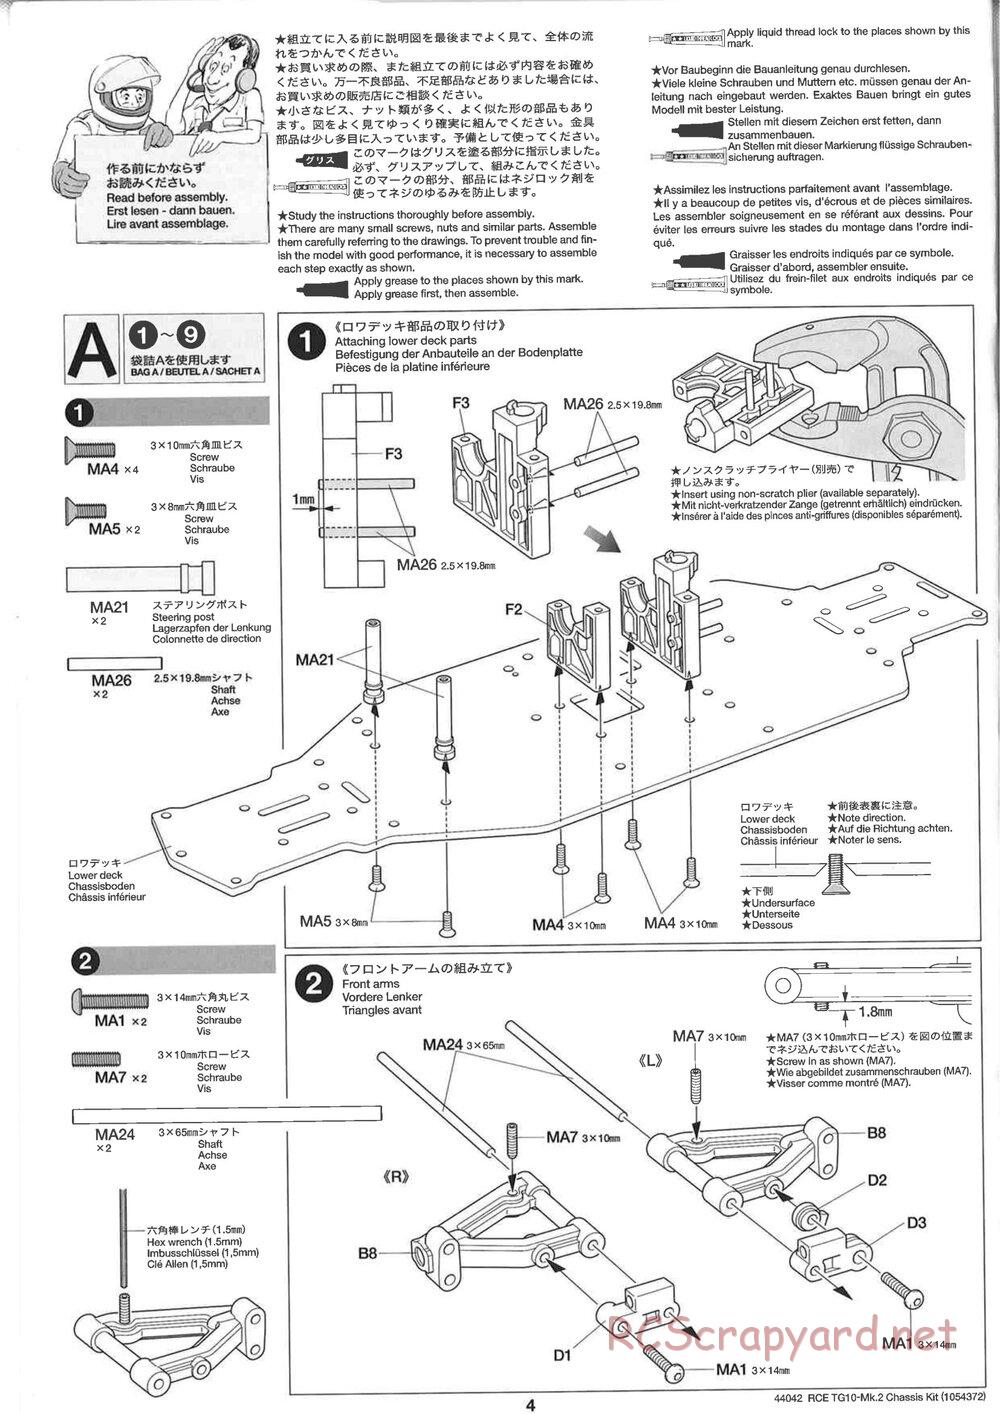 Tamiya - TG10 Mk.2 Chassis - Manual - Page 4